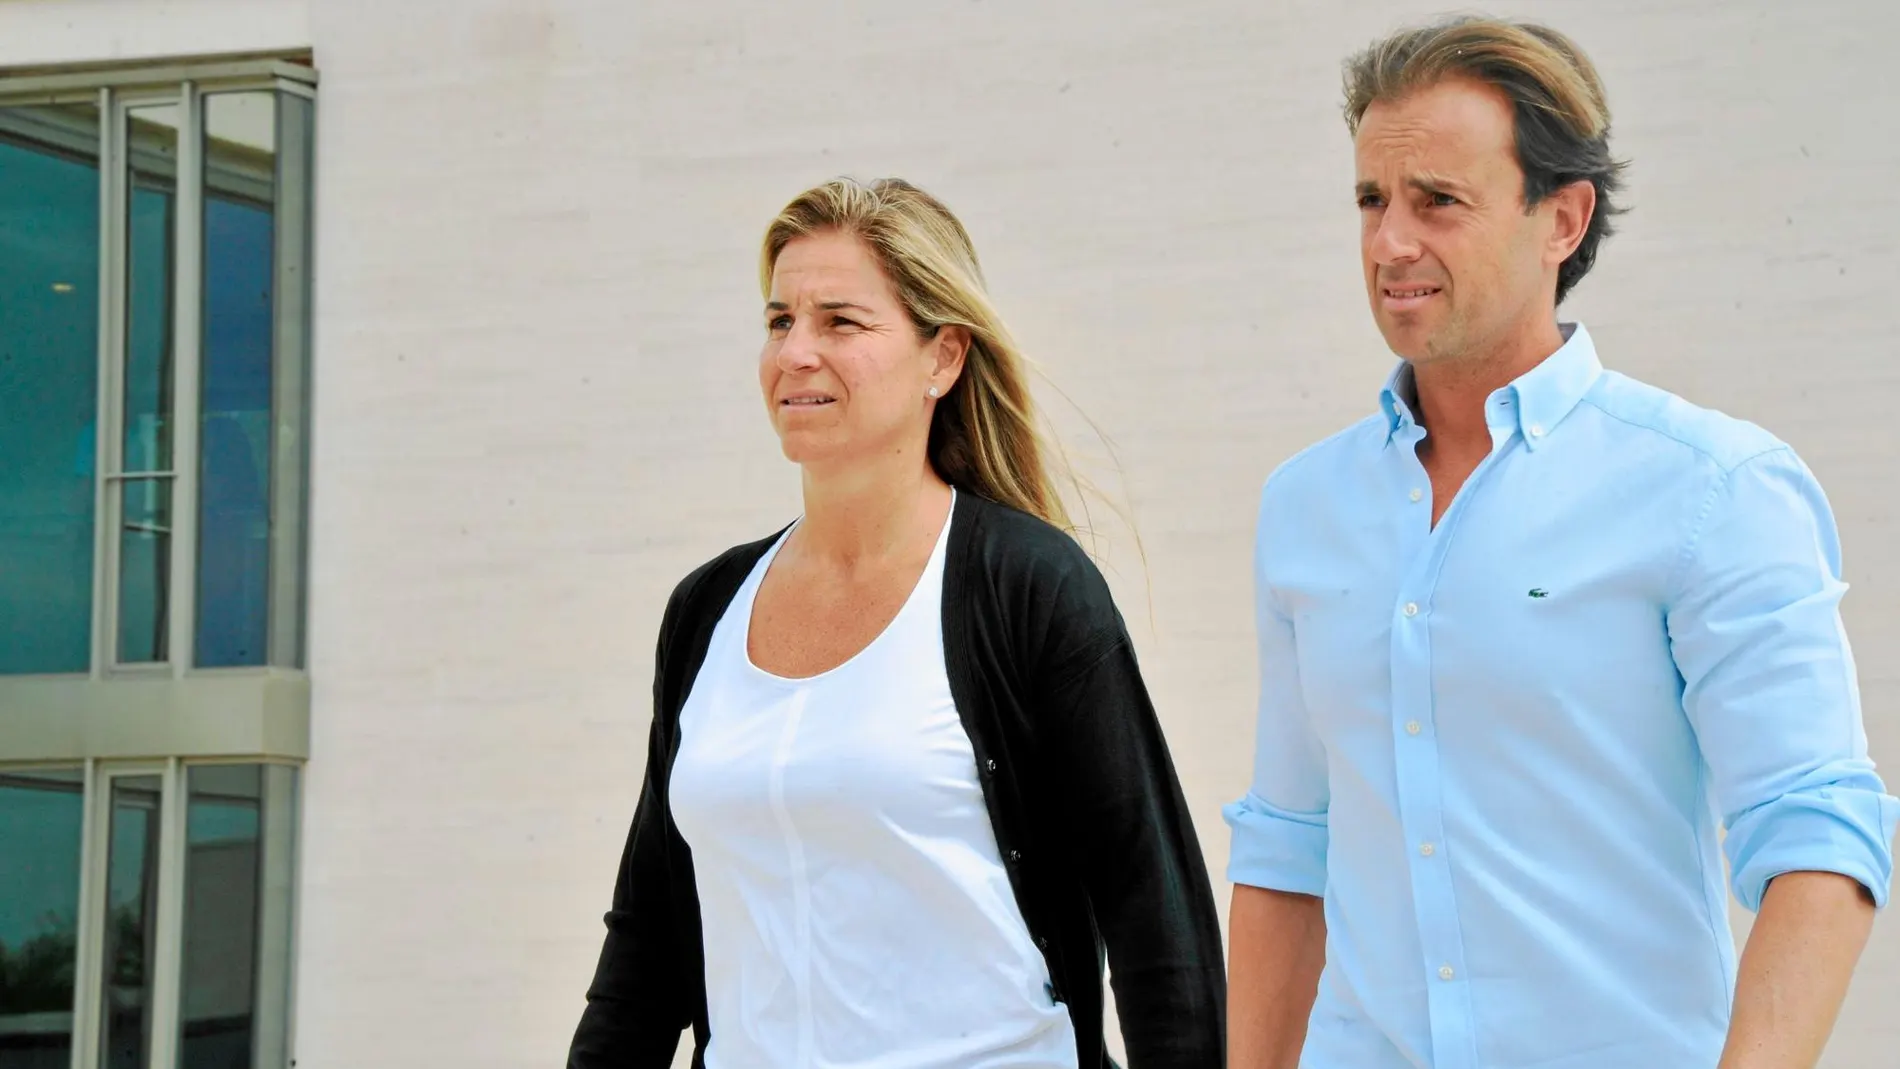 Arantxa Sánchez Vicario y Josep Santacana están en pleno juicio de divorcio